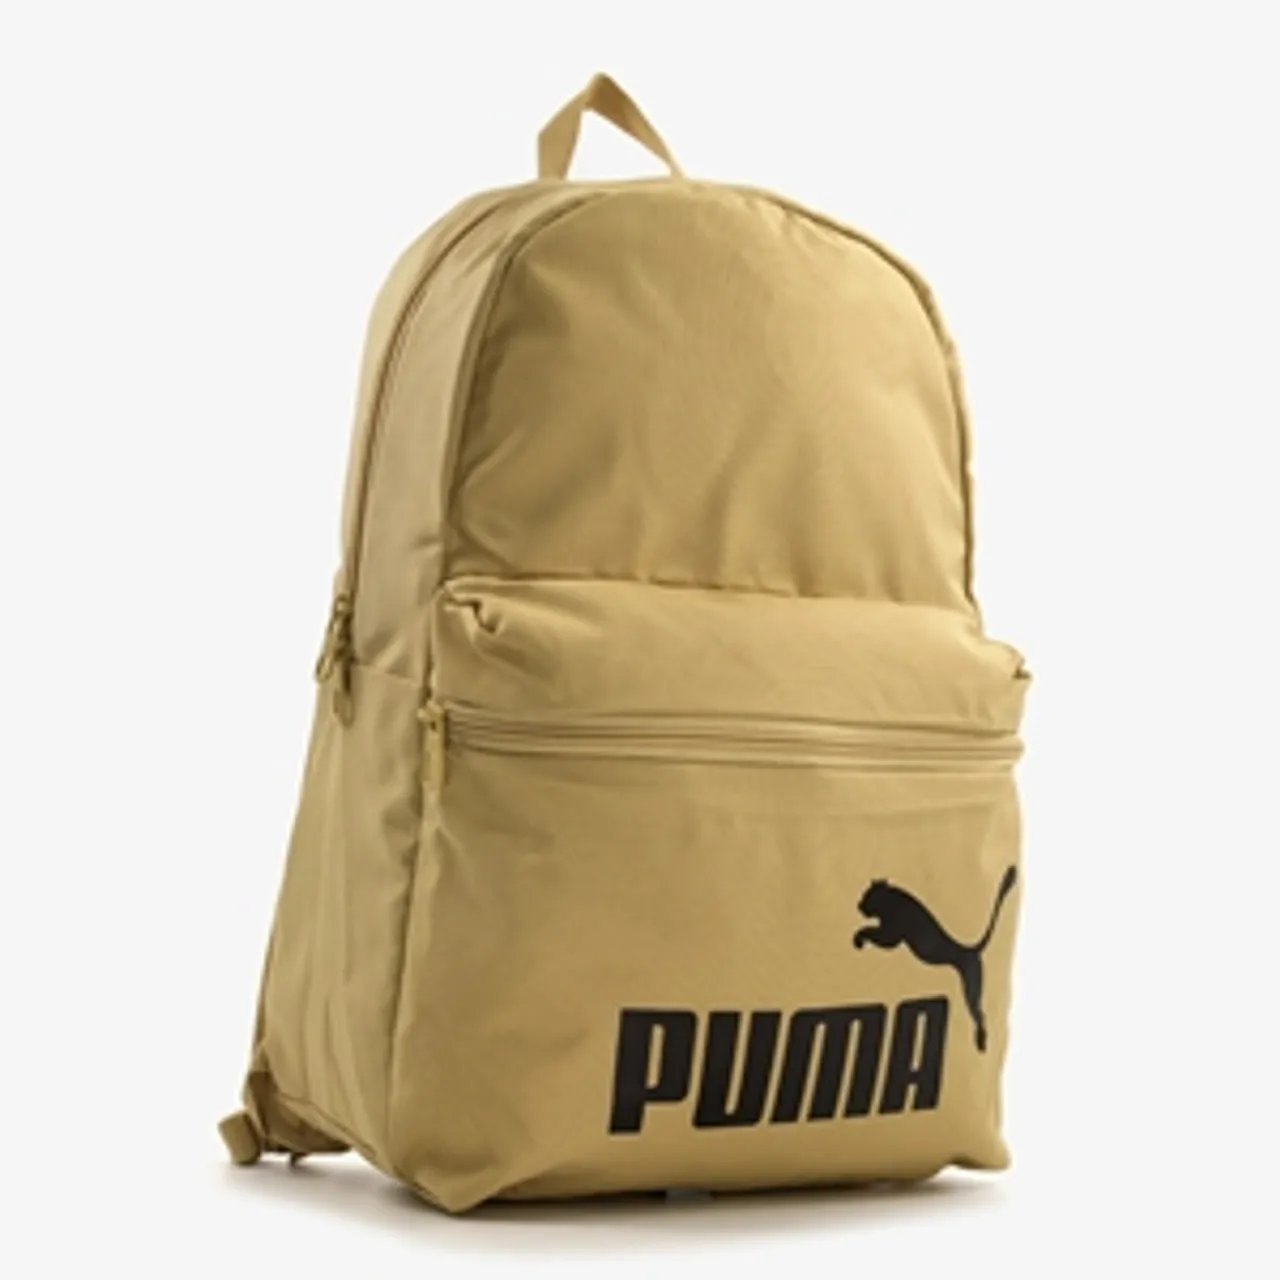 Puma Phase rugzak beige 22 liter